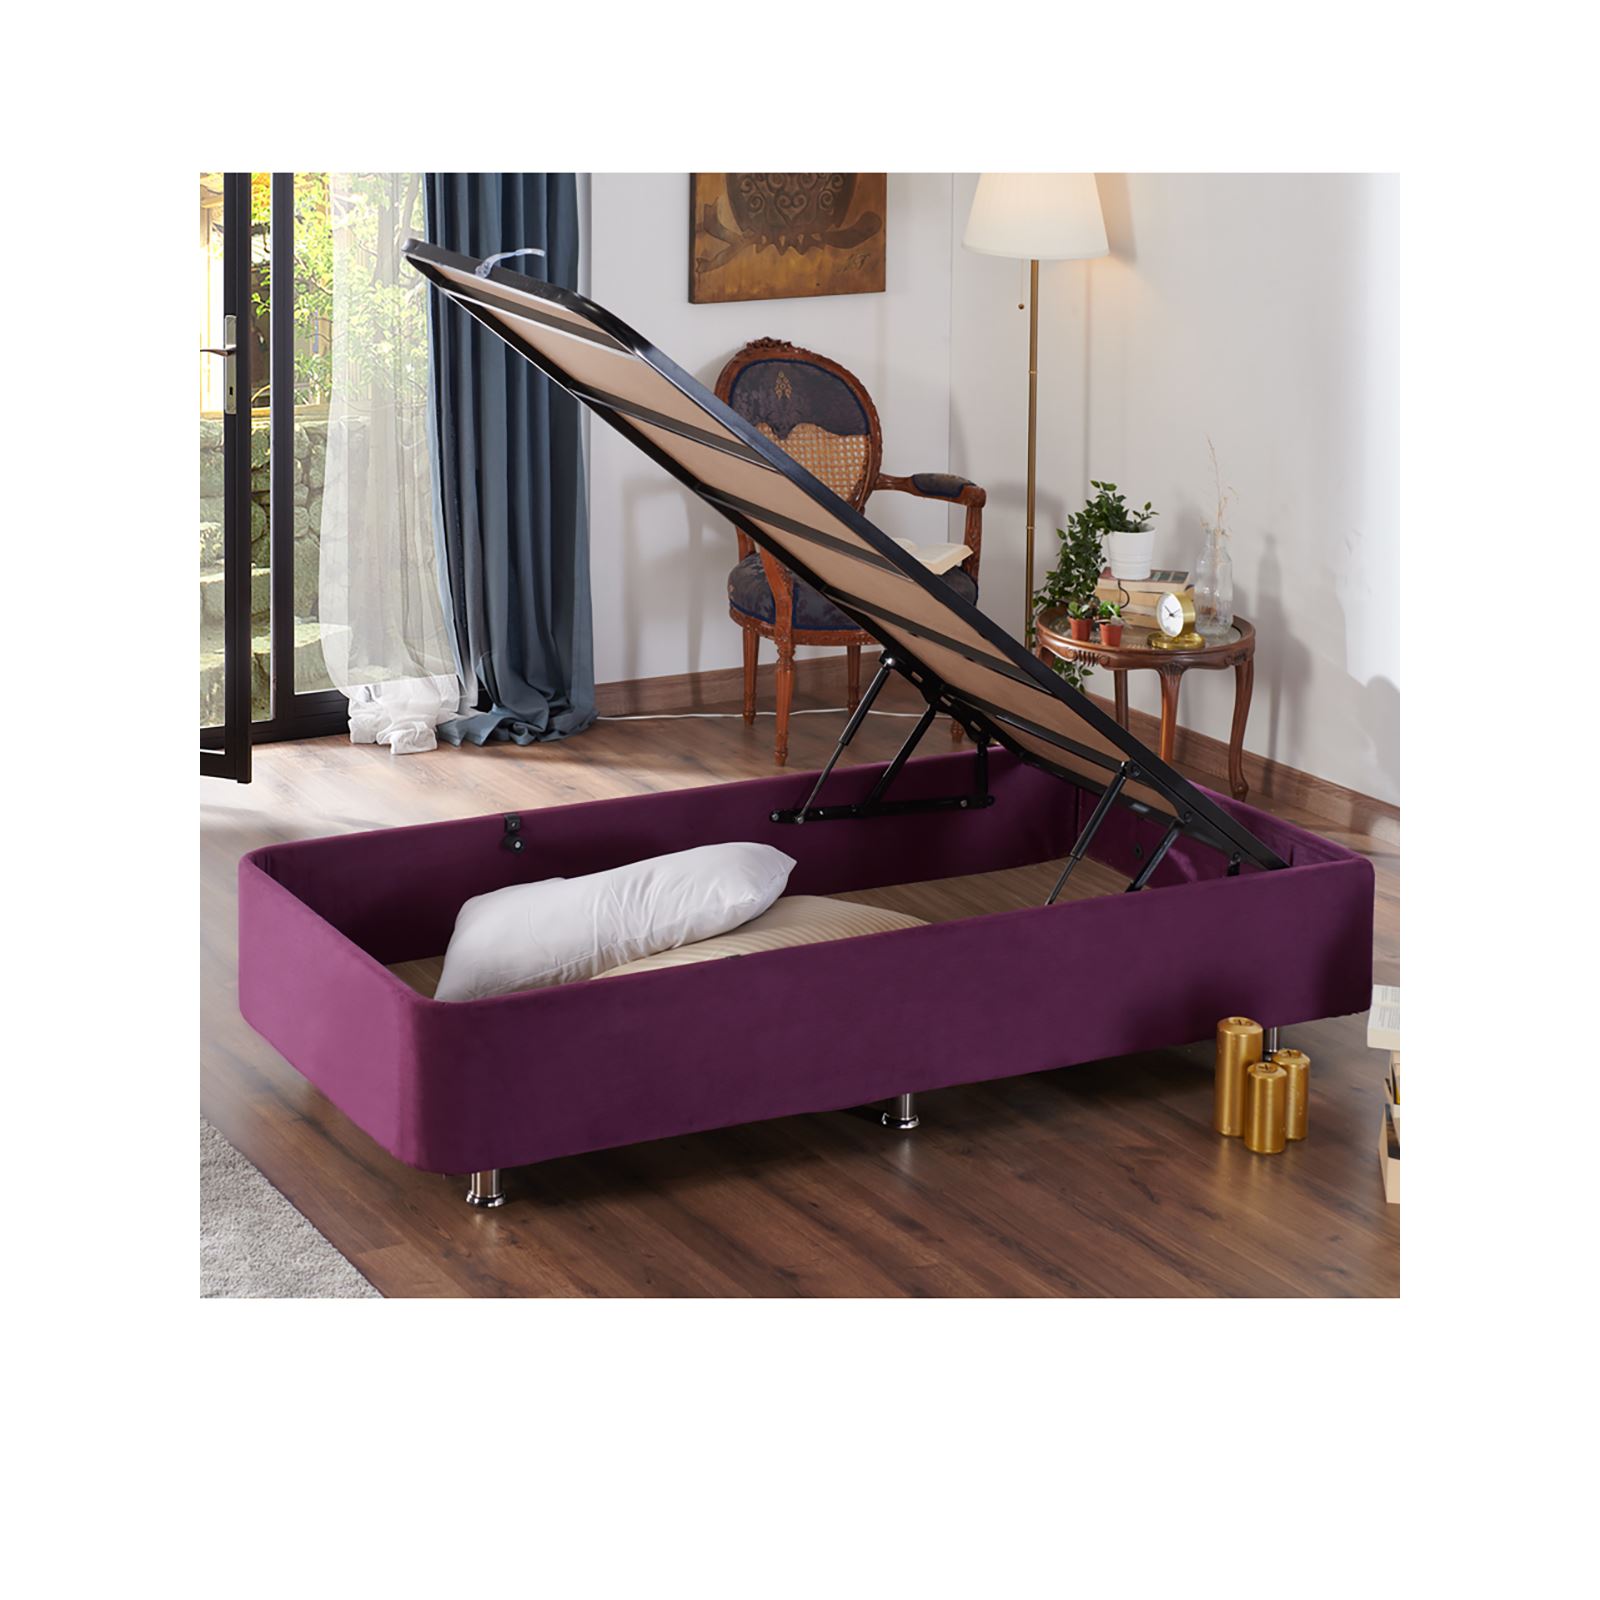 Niron Violet Yatak Seti 140x190 cm Çift Kişilik Yatak Baza Başlık Takımı Orta Sert Yatak Baza ve Başlığı Mor